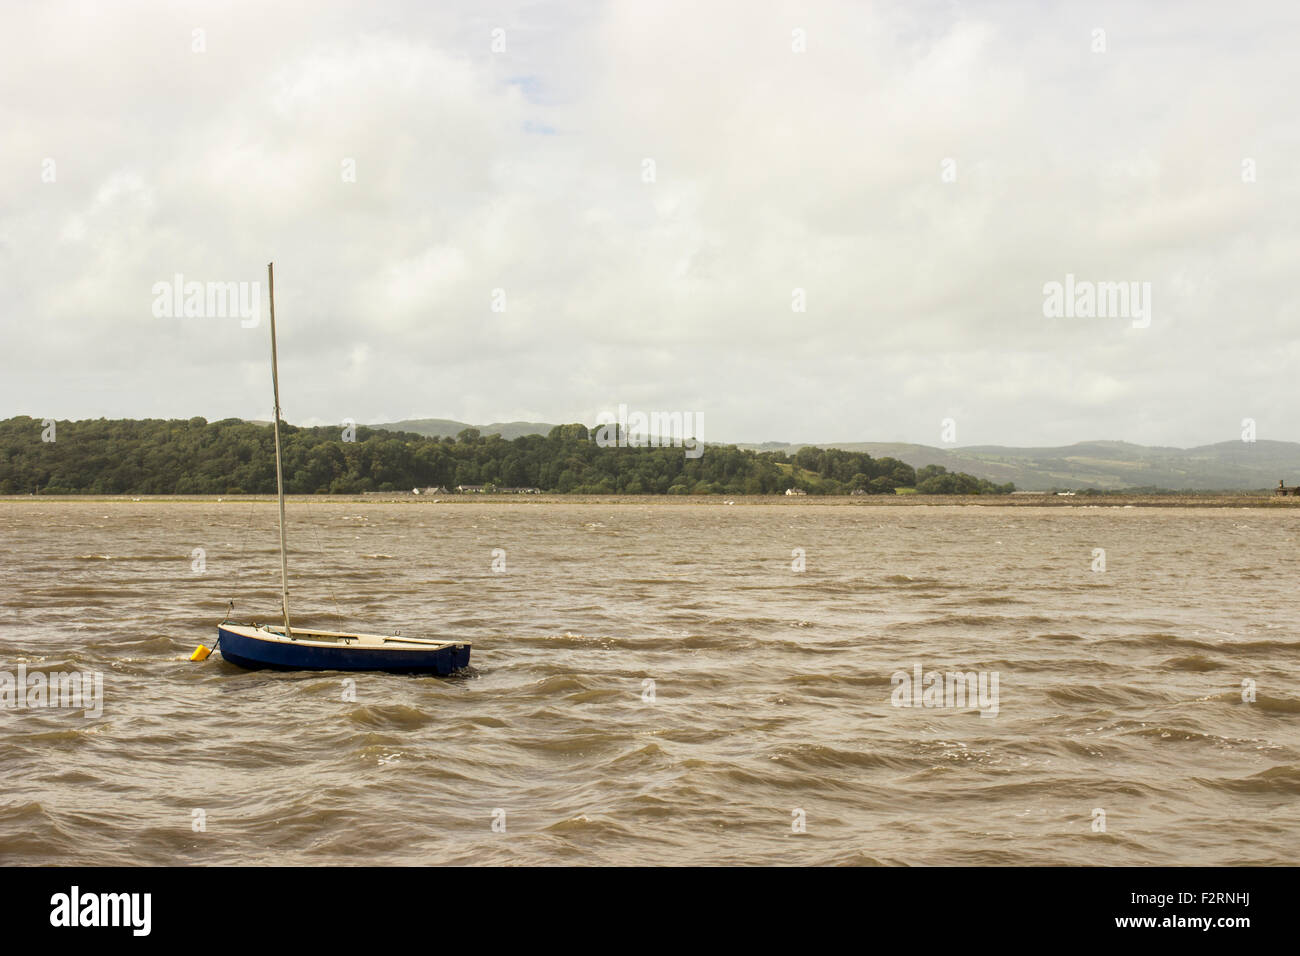 Das Meer in Morecambe Bay. Ein kleines blaues Boot segelt im Meer mit einem wolkigen Himmel schwebt über der Szene. Stockfoto